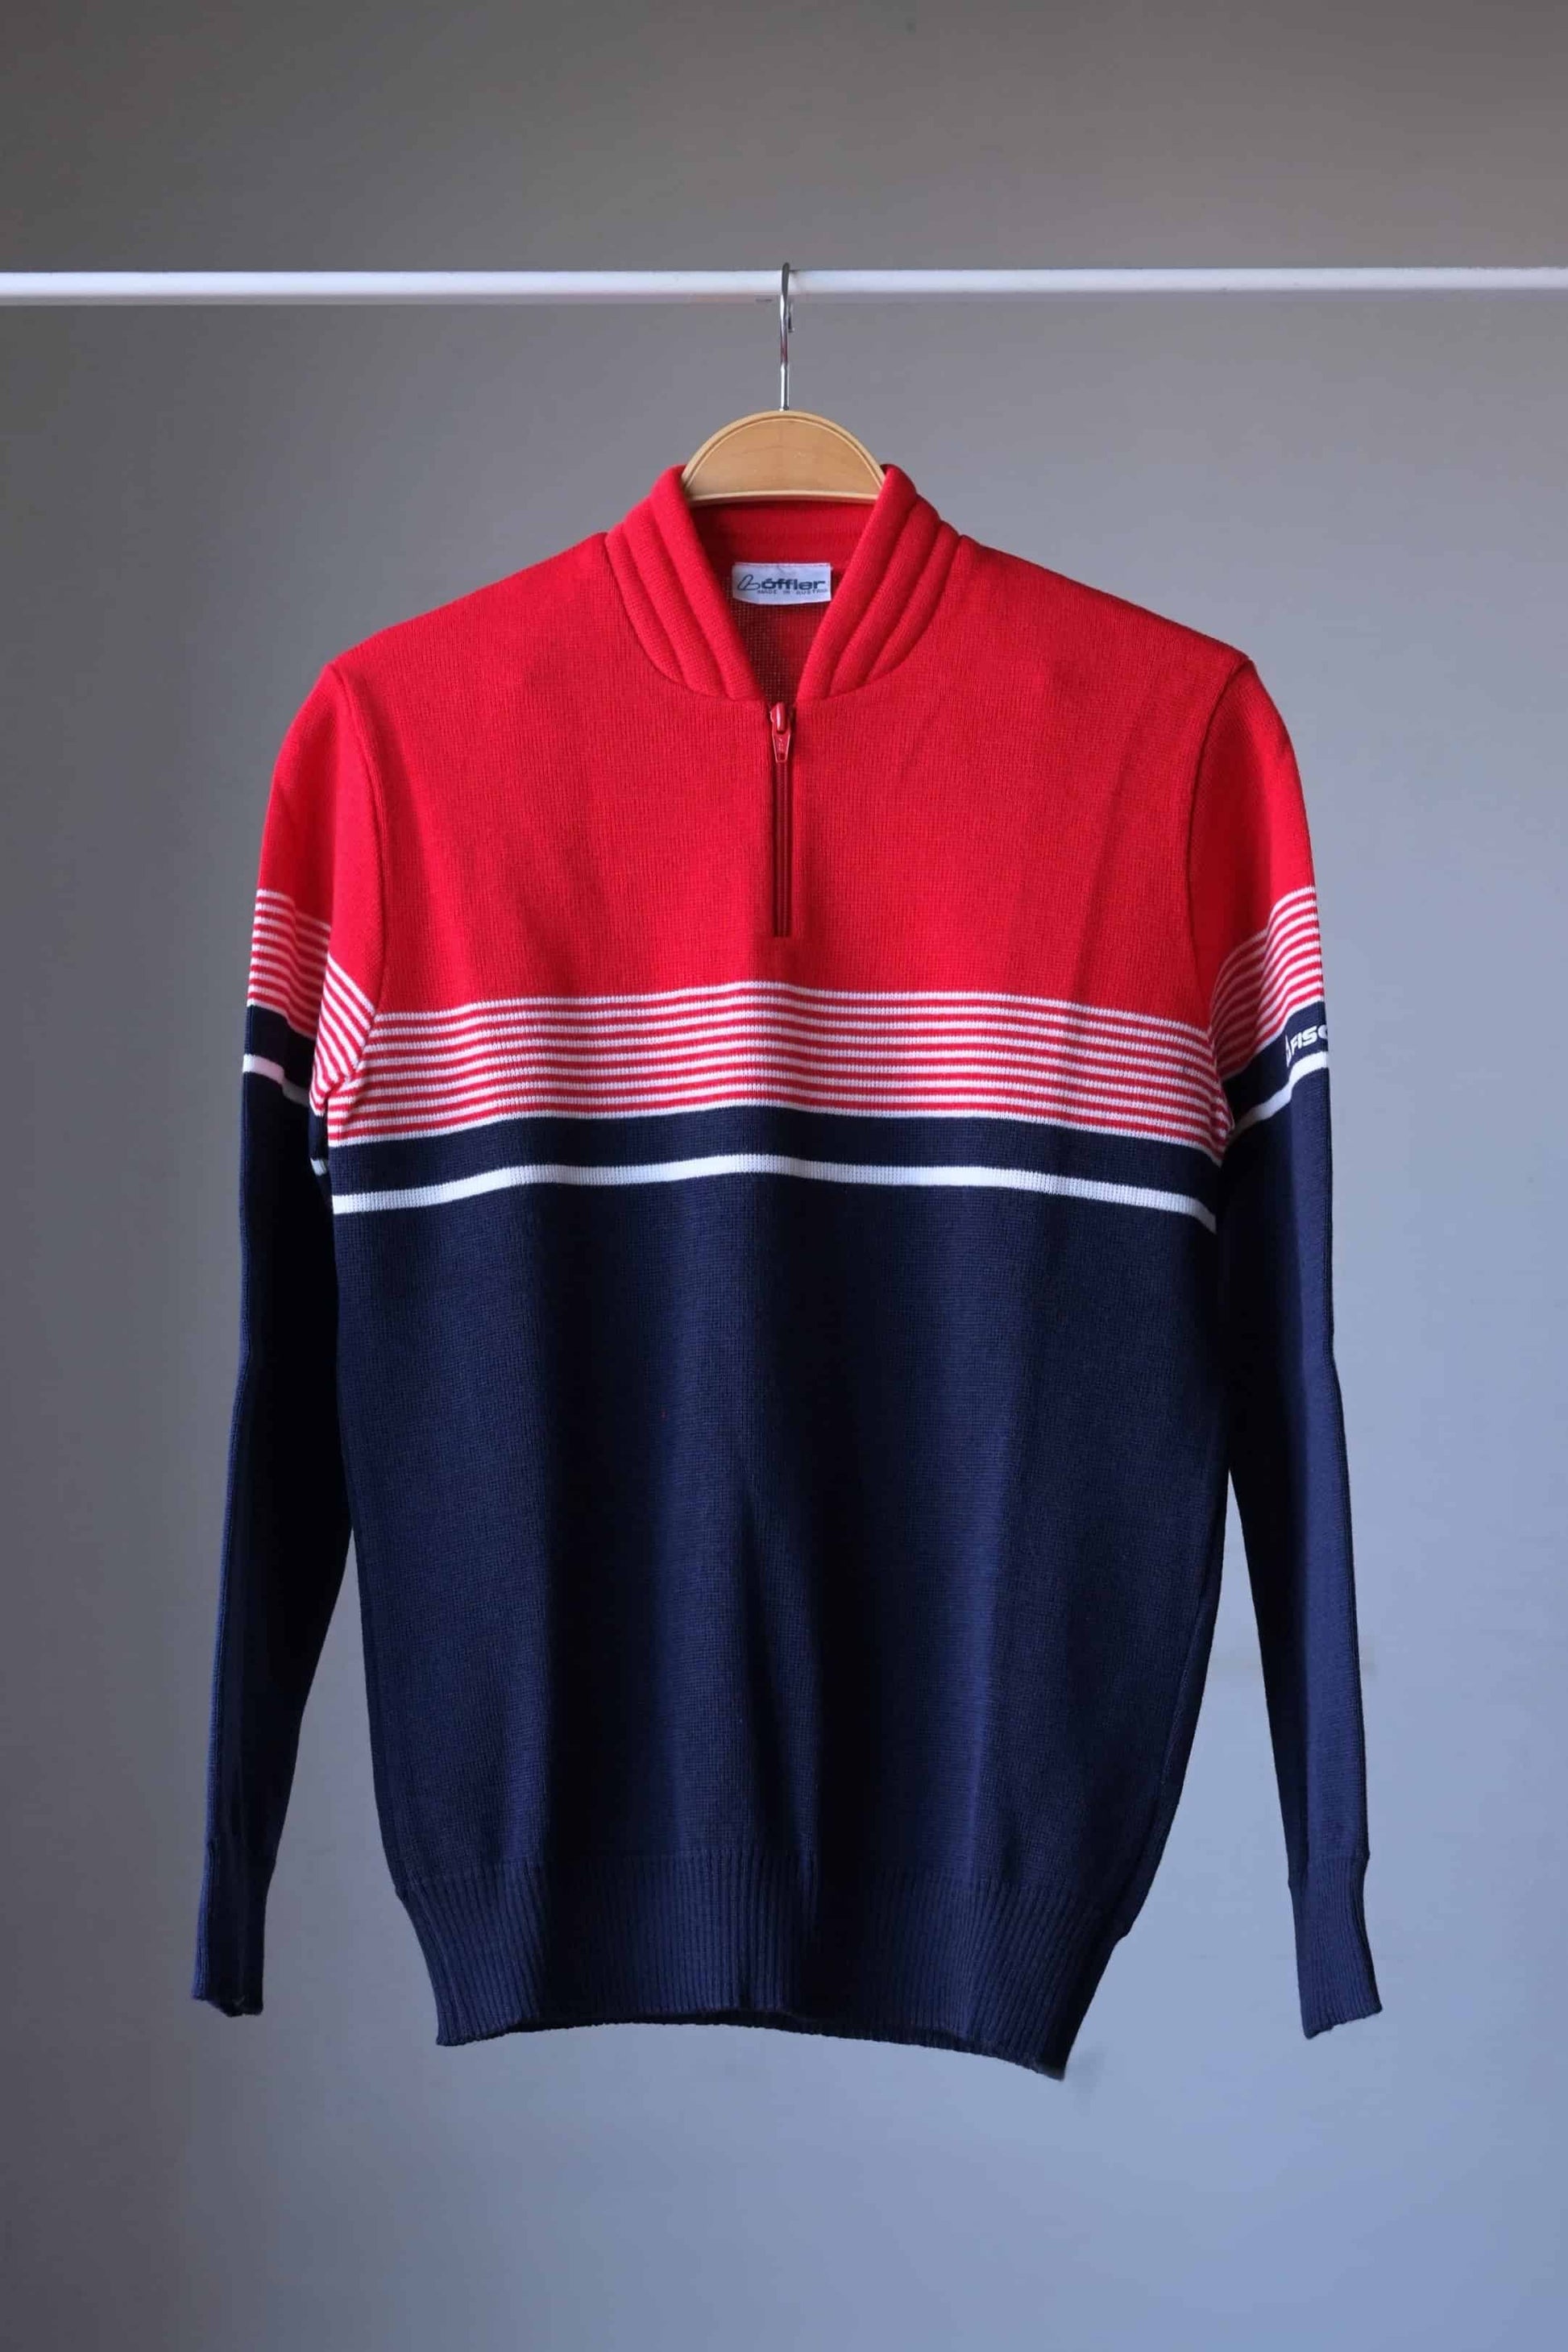 Vintage LÖFFLER Fischer 80's Sweater red navy